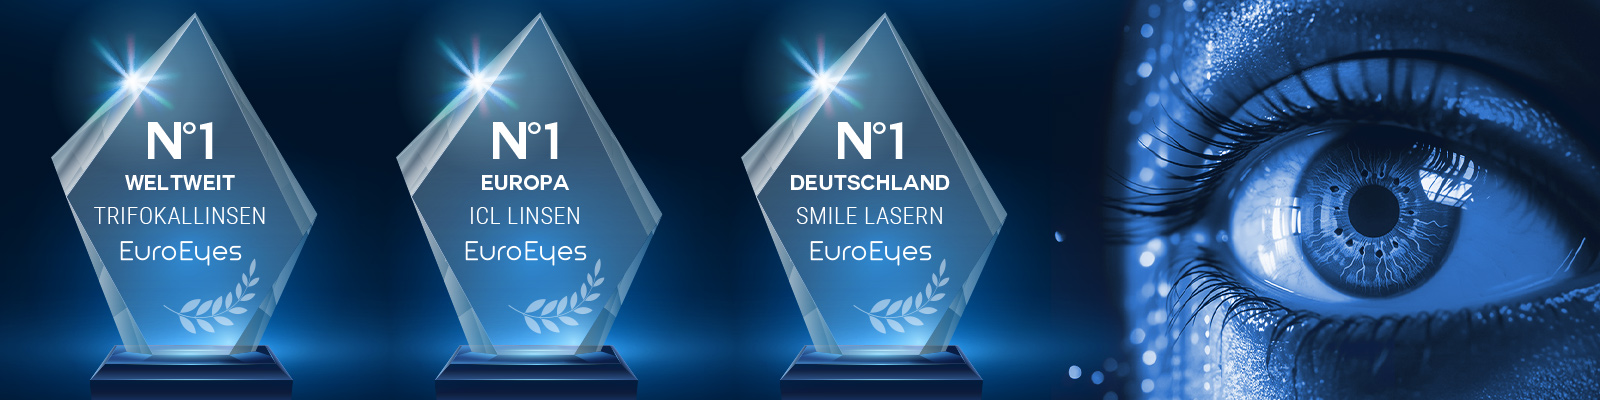 EuroEyes Auszeichnungen